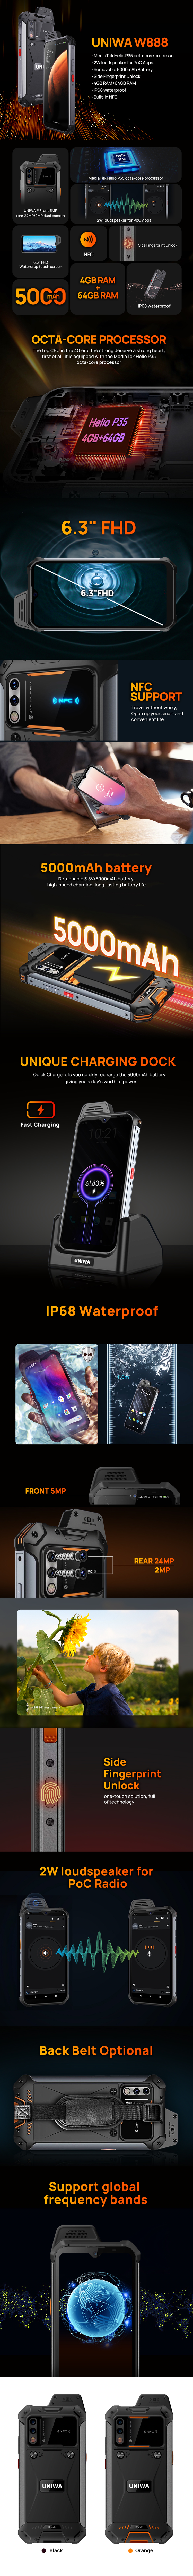 W888 Zello IP68 Waterproof Smartphone NFC Real PTT POC Radio